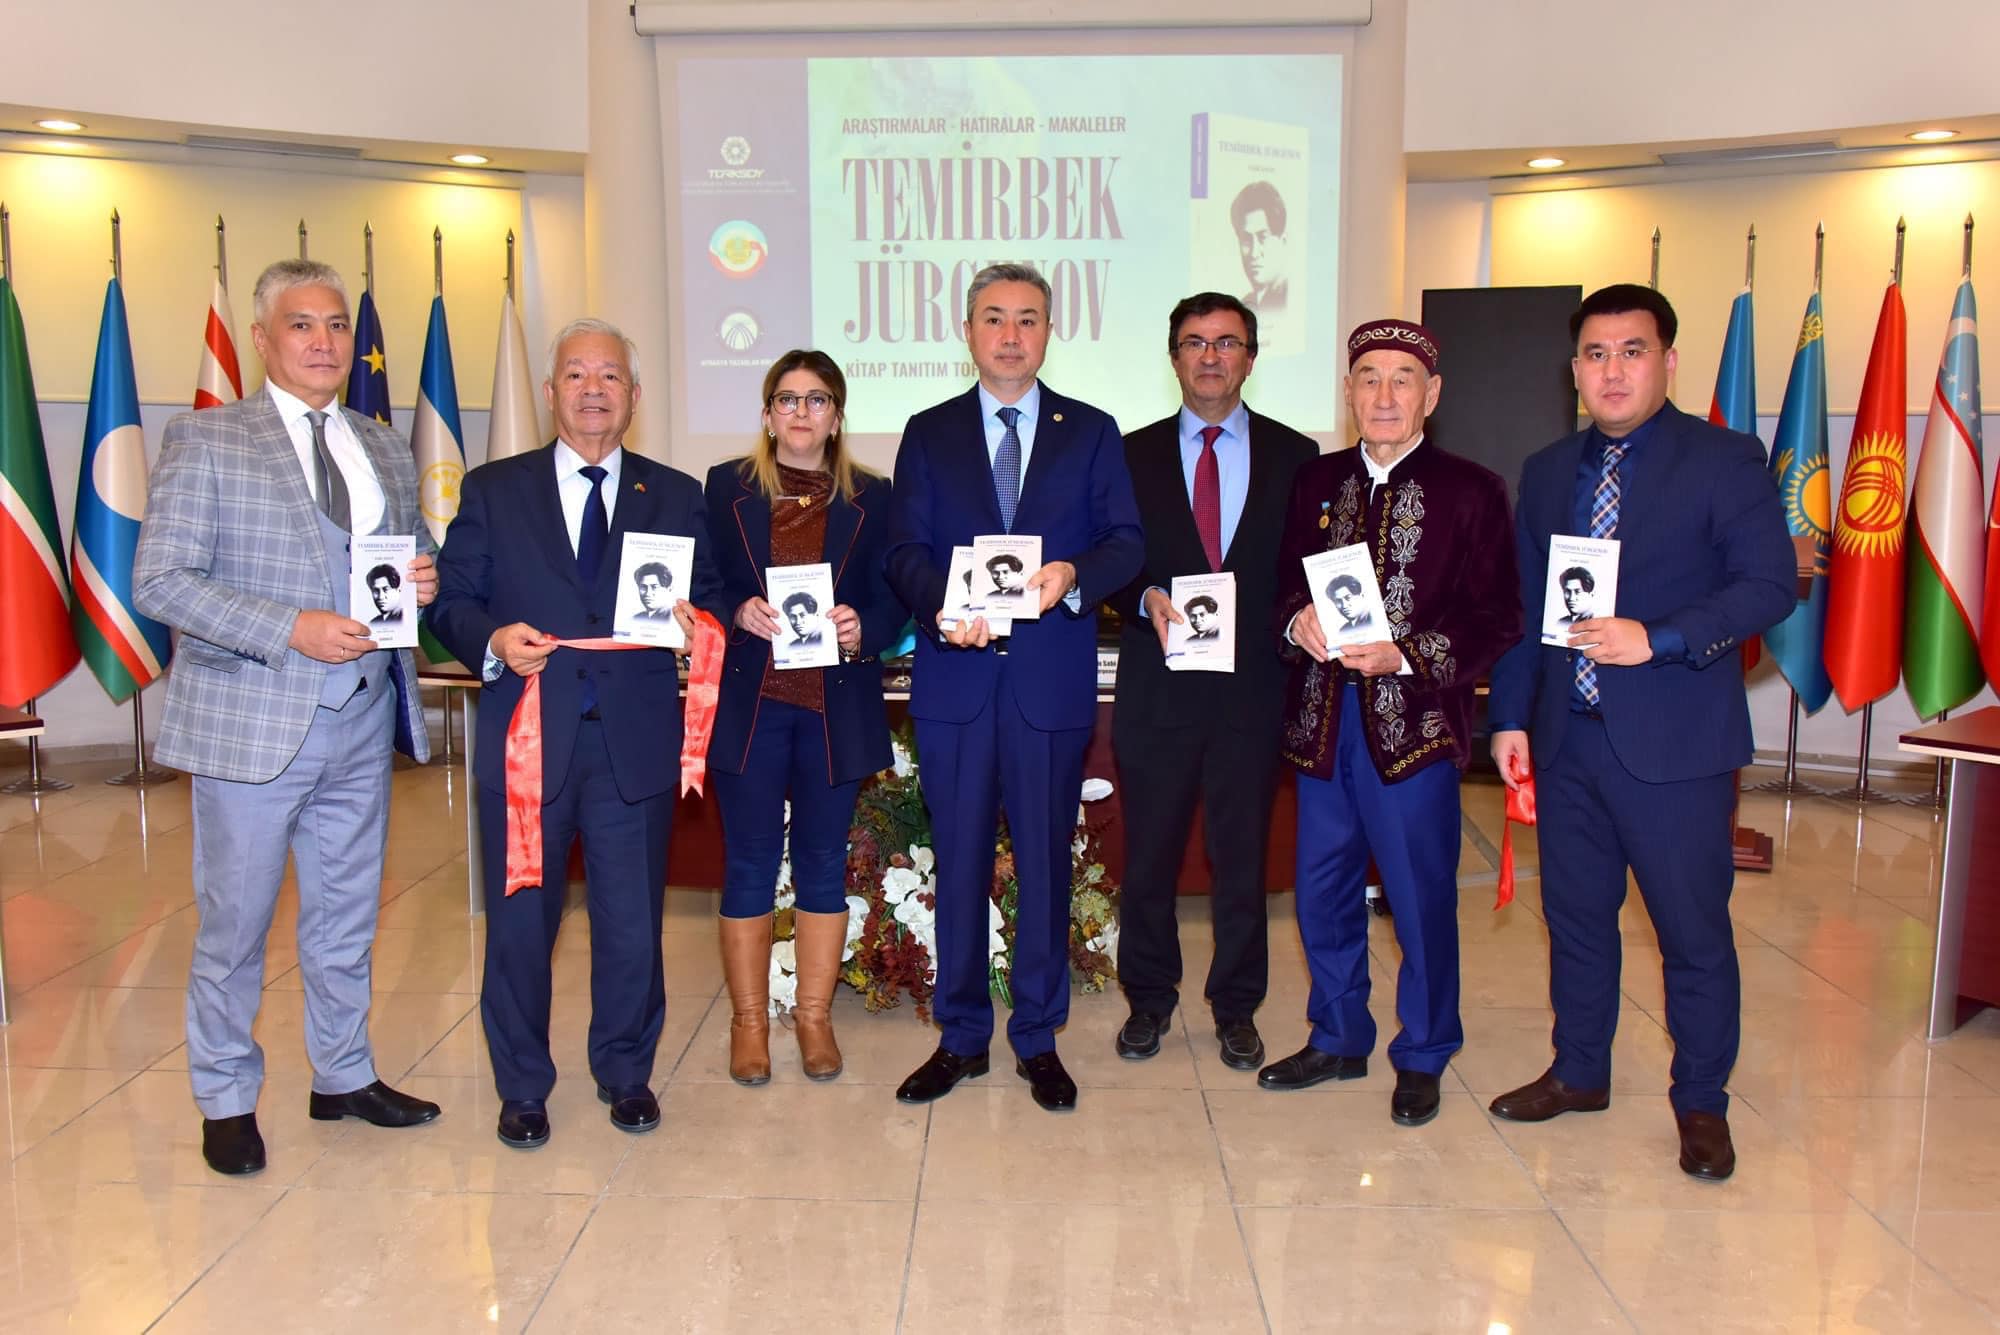 В Анкаре прошла презентация книги, посвященной Темирбеку Жургенову